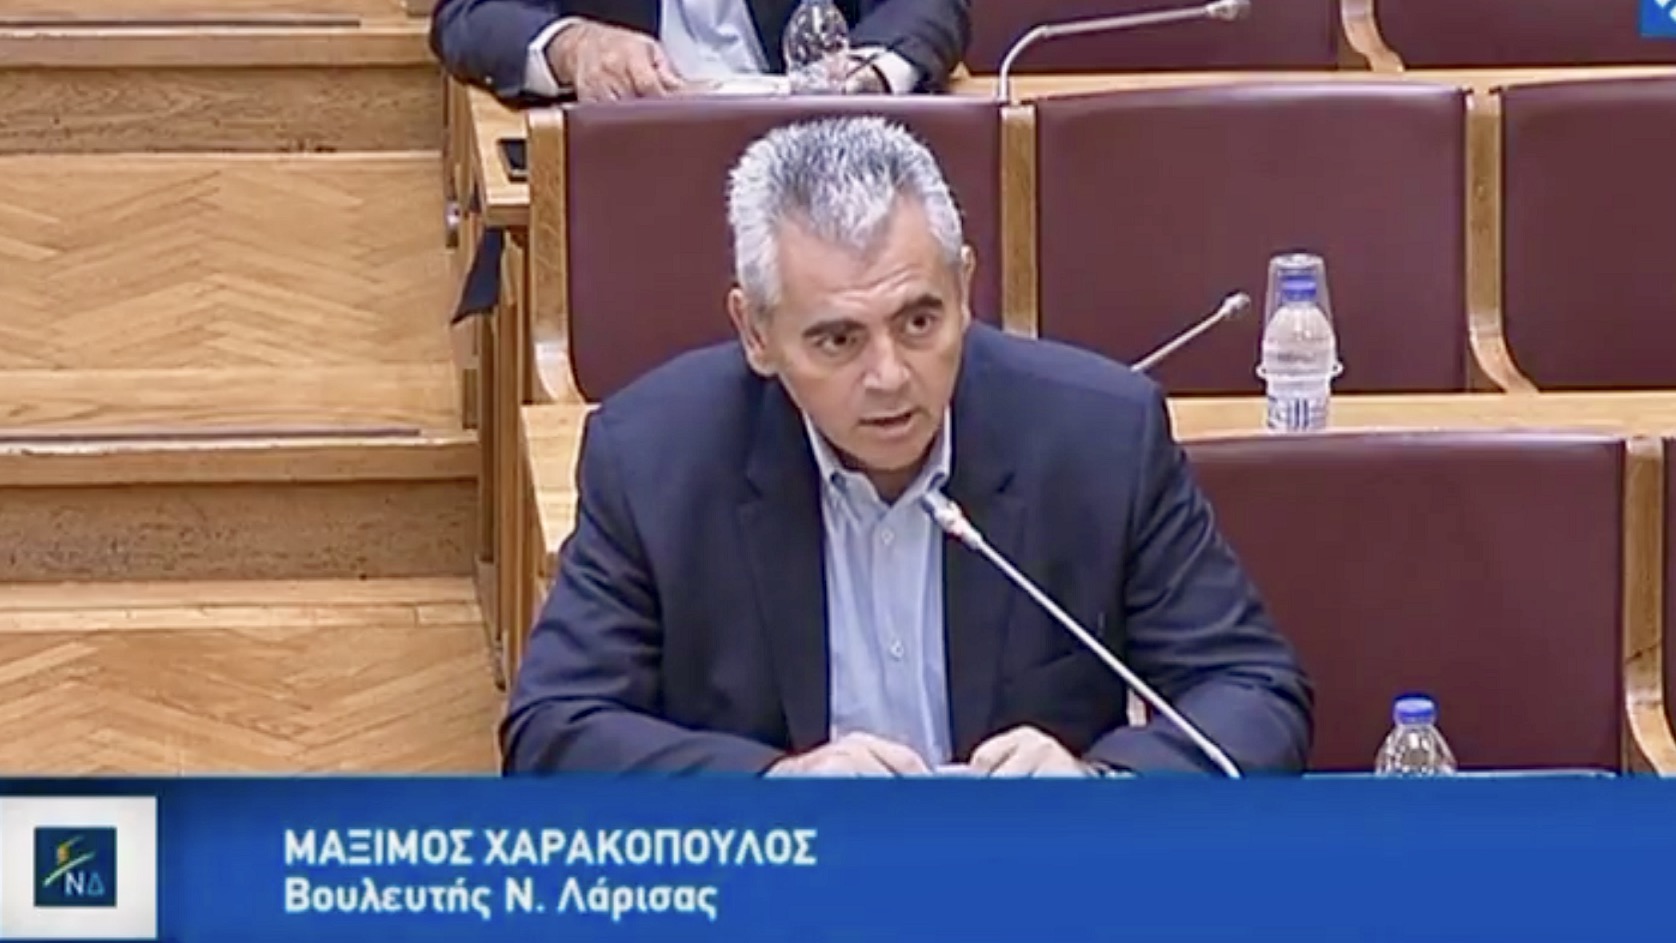 Χαρακόπουλος: Με κυβερνητική ανοχή η “σαραντοποδαρούσα” της ανομίας αντεπιτίθεται!